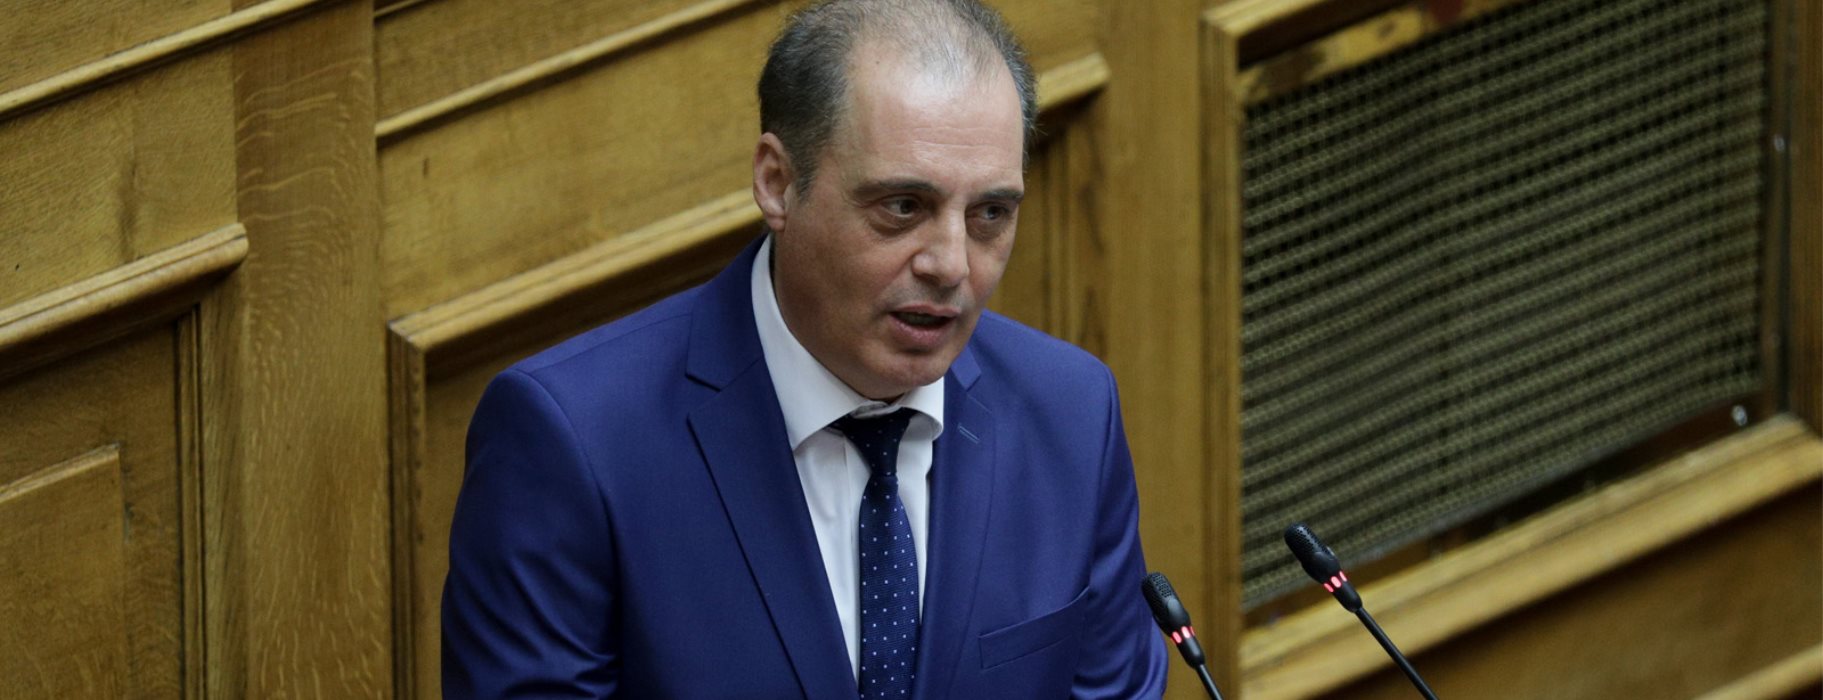 Κάλεσμα της Ελληνικής Λύση στην κυβέρνηση για τη δημιουργία του «Εθνικού Ταμείου»